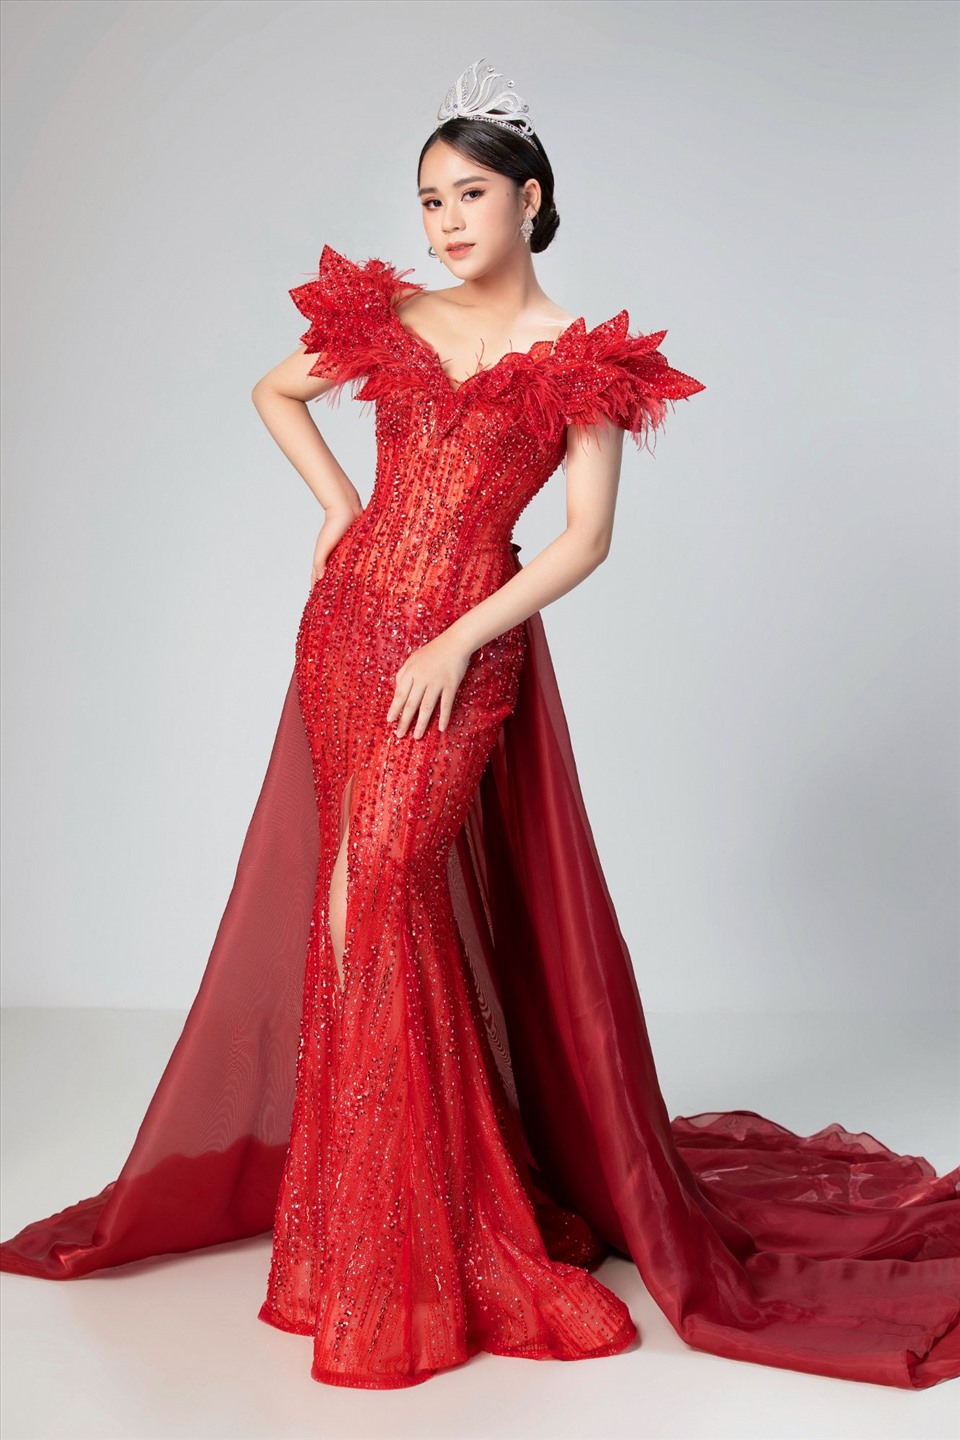 Gửi rất nhiều tâm huyết vào trang phục này, NTK Nguyễn Minh Tuấn mong rằng trong đêm Chung kết tới đây, đại diện Việt Nam tại Miss Eco Teen International 2021 sẽ là một bông hoa Trạng Nguyên lung linh, rạng ngời nhất với vẻ đẹp của tri thức và trí tuệ.